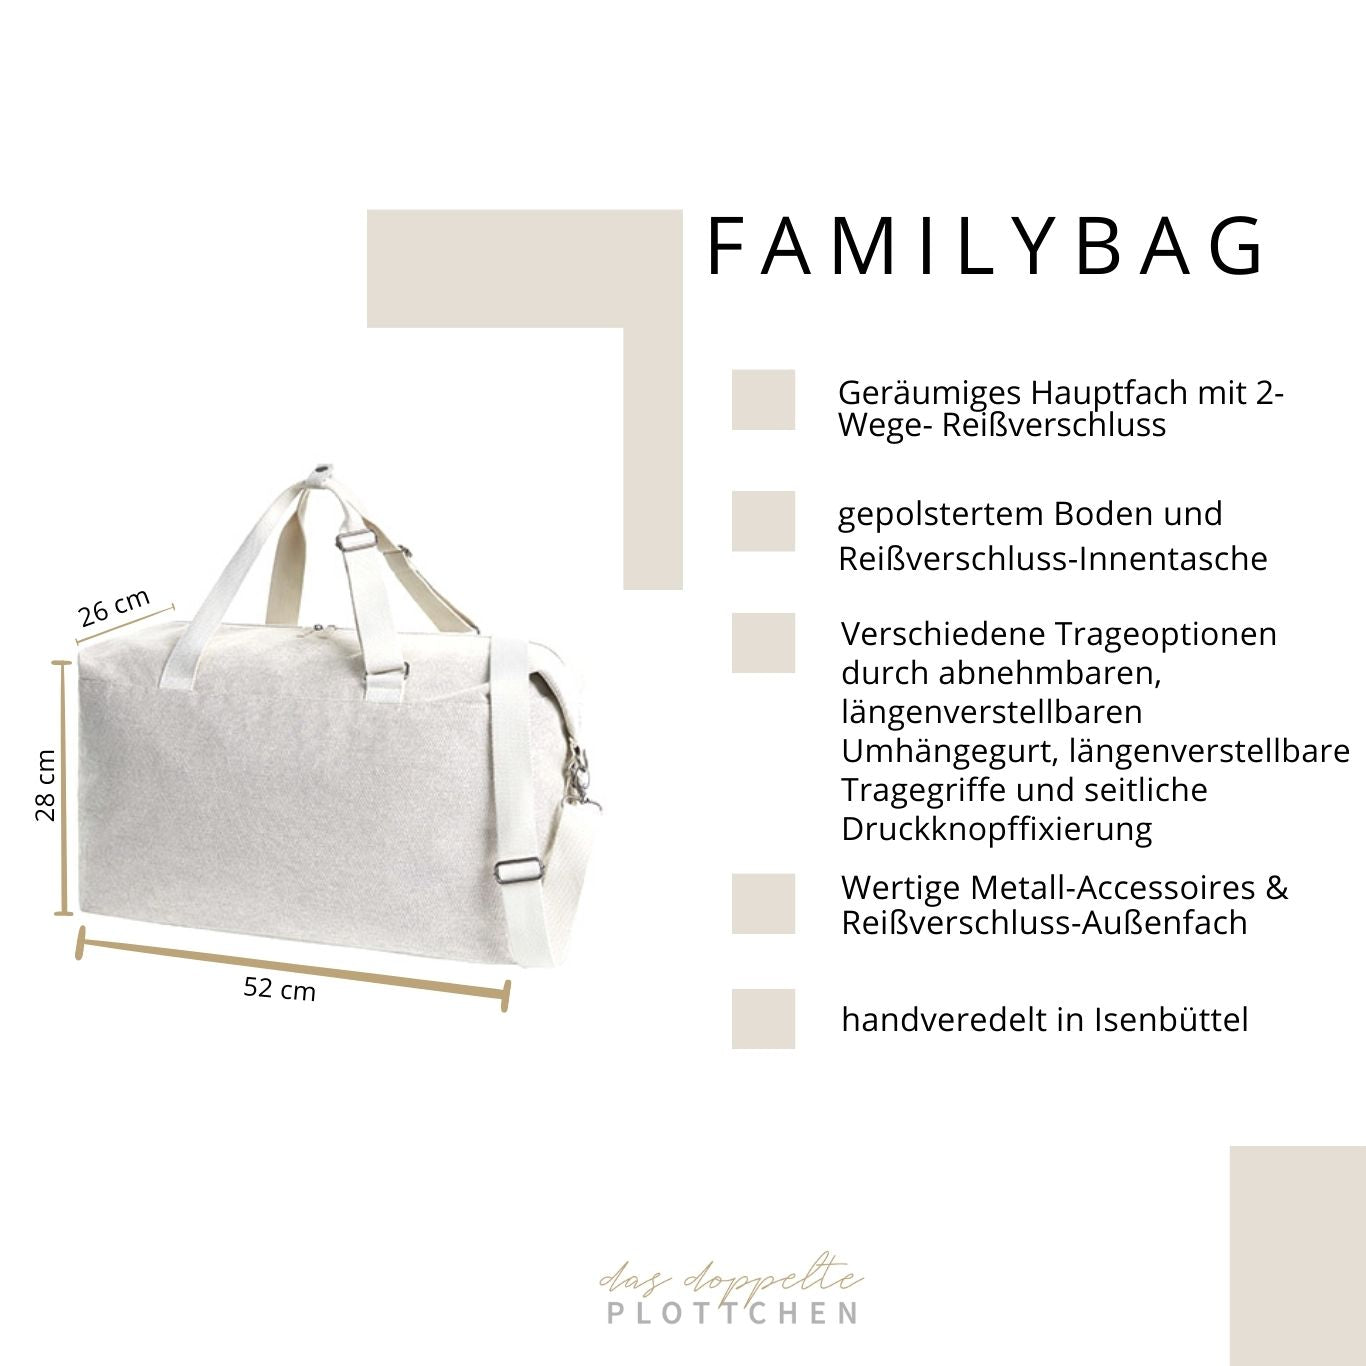 Familybagbag HERZ personalisiert das doppelte Plottchen®